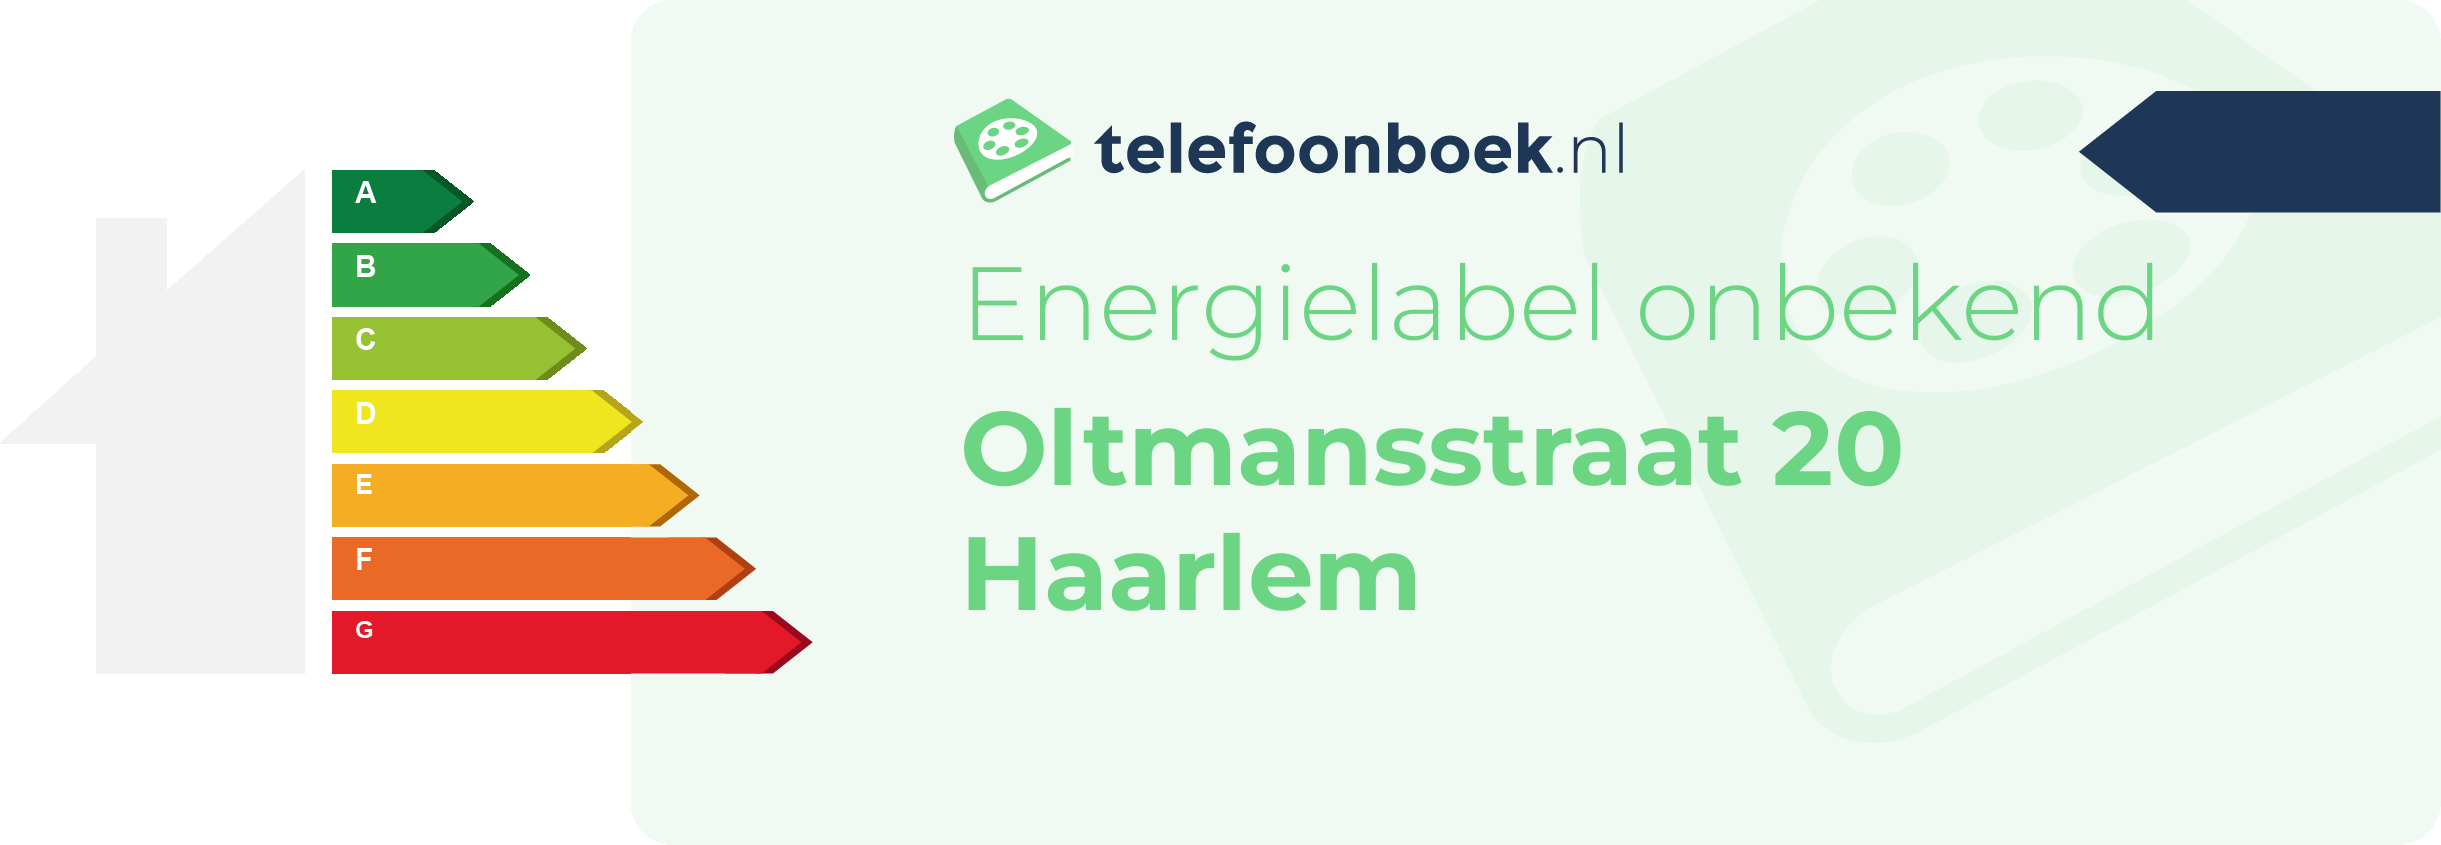 Energielabel Oltmansstraat 20 Haarlem